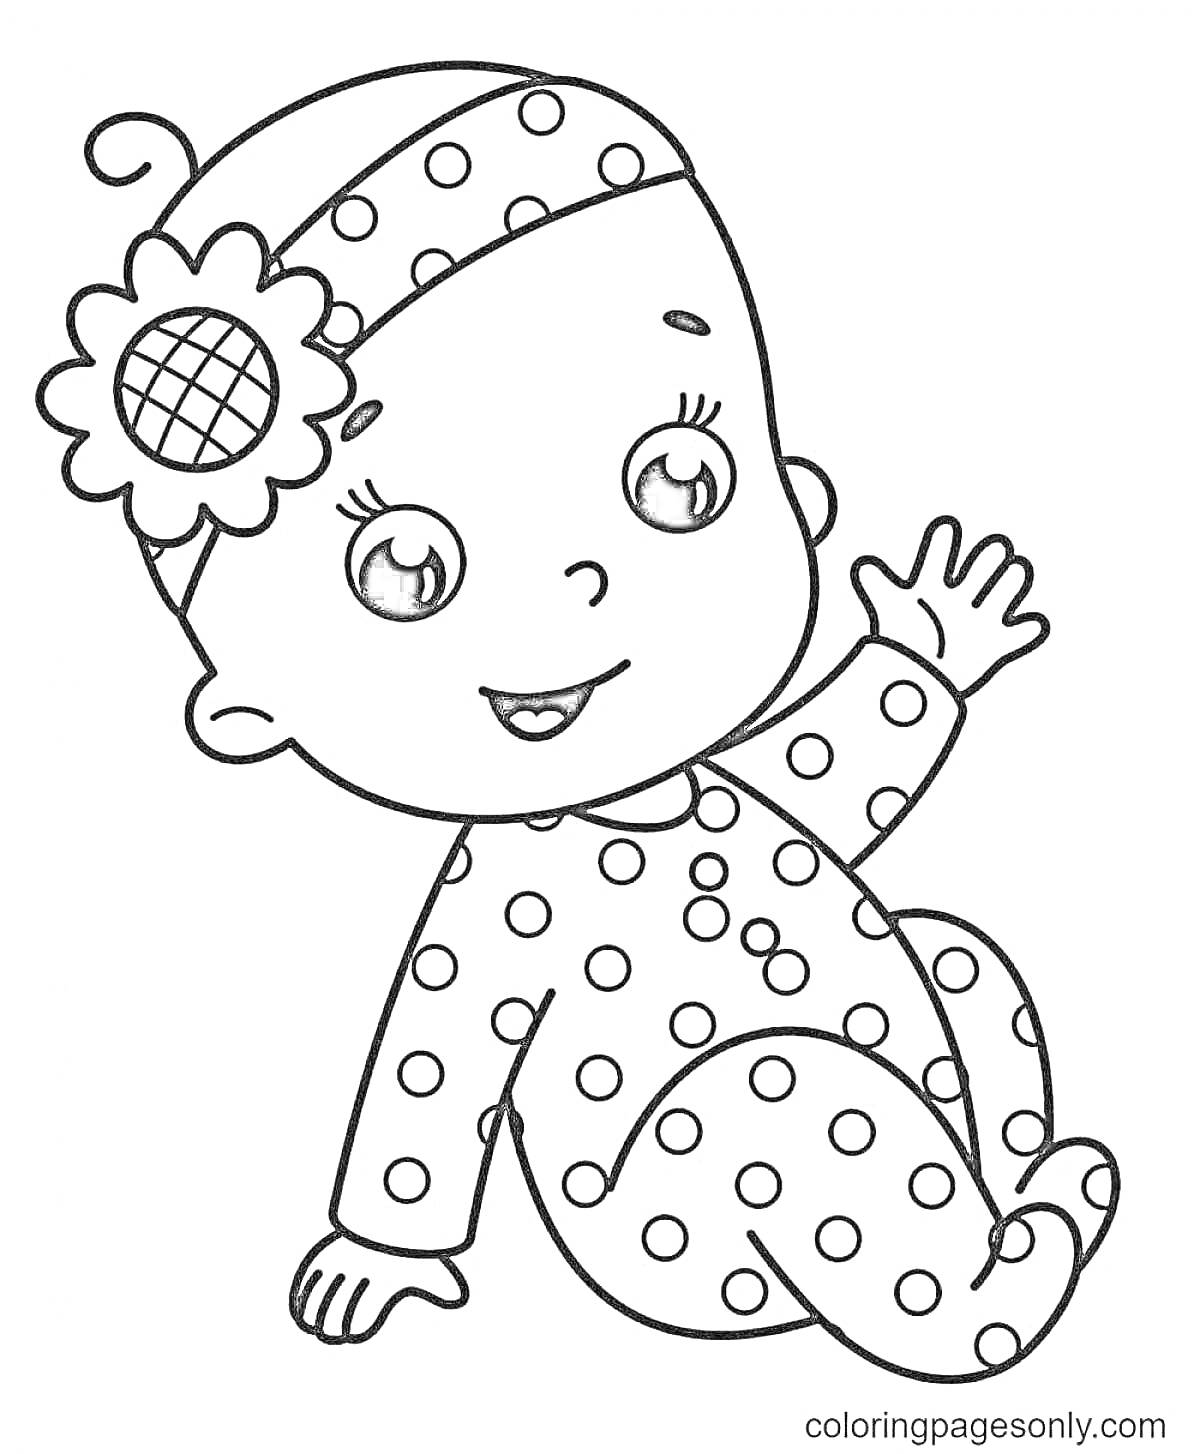 Раскраска Малыш в комбинезоне и повязке с цветком на голове, сидящий и машущий рукой